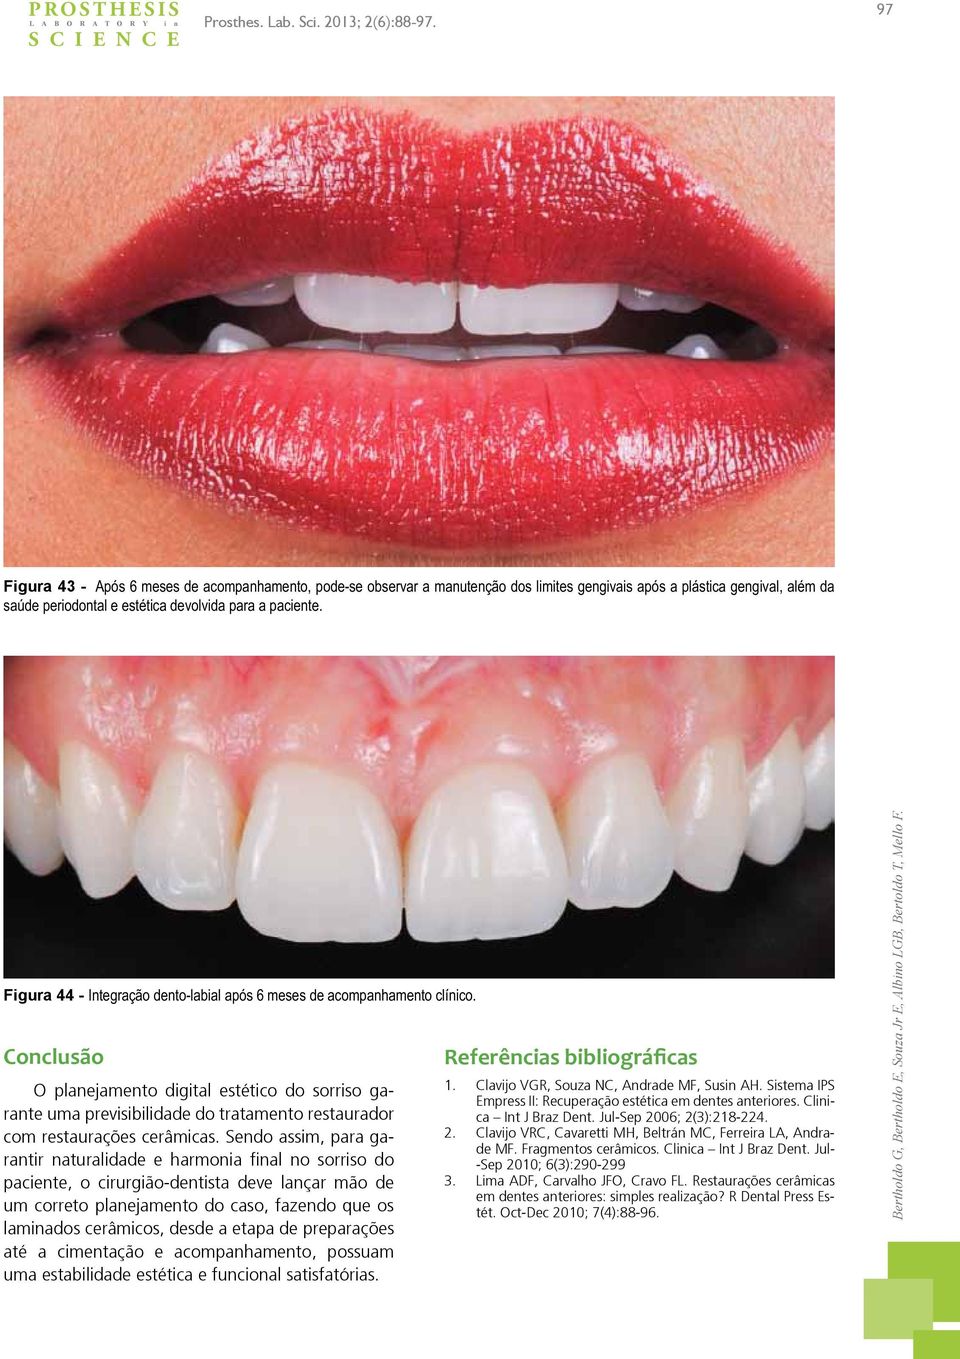 Figura 44 - Integração dento-labial após 6 meses de acompanhamento clínico.